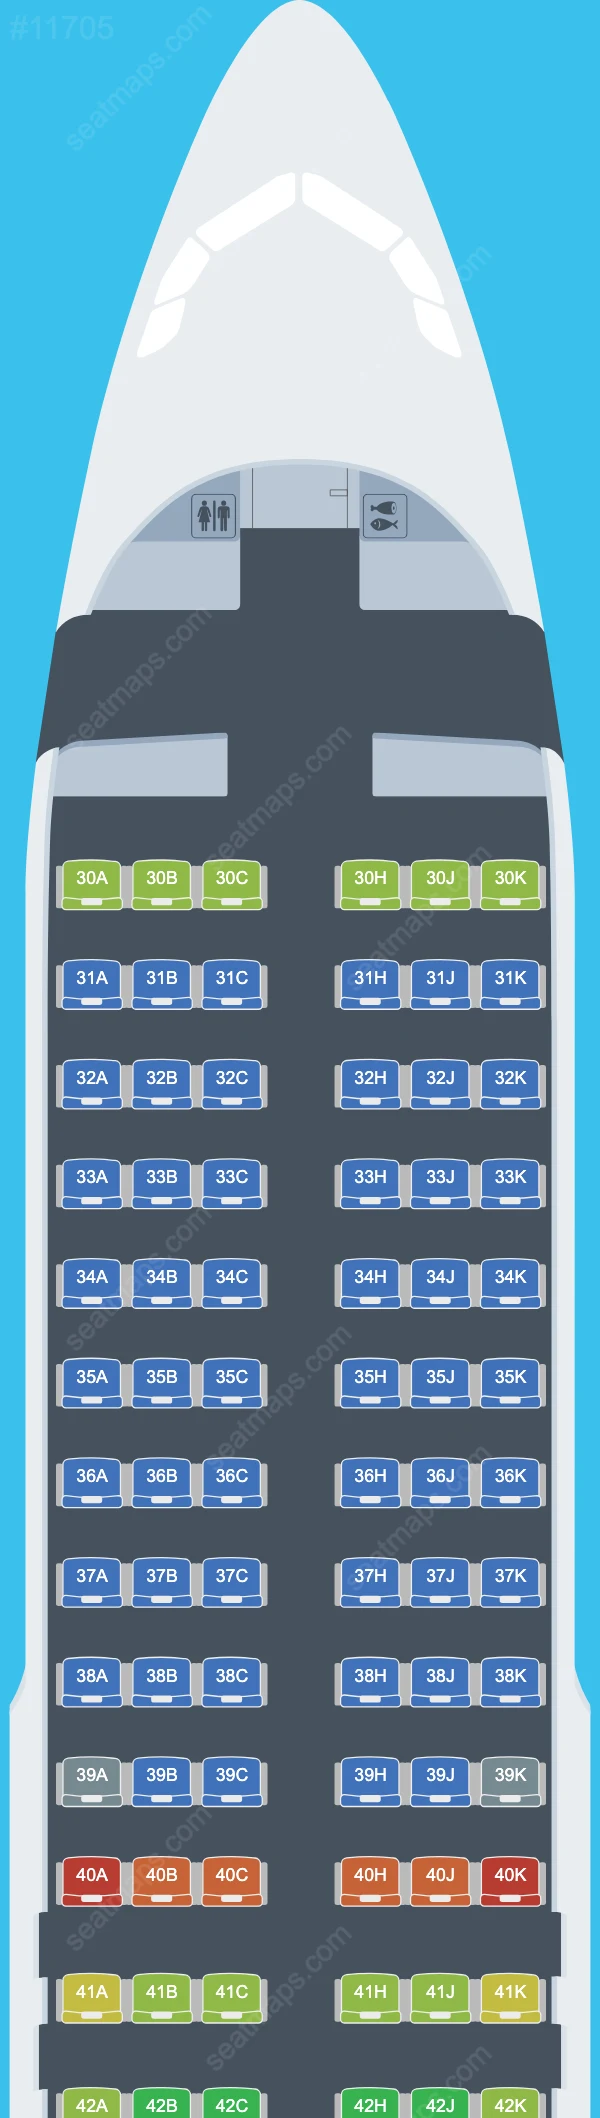 Sichuan Airlines Airbus A320neo Sitzplan für Flugzeuge A320neo V.1